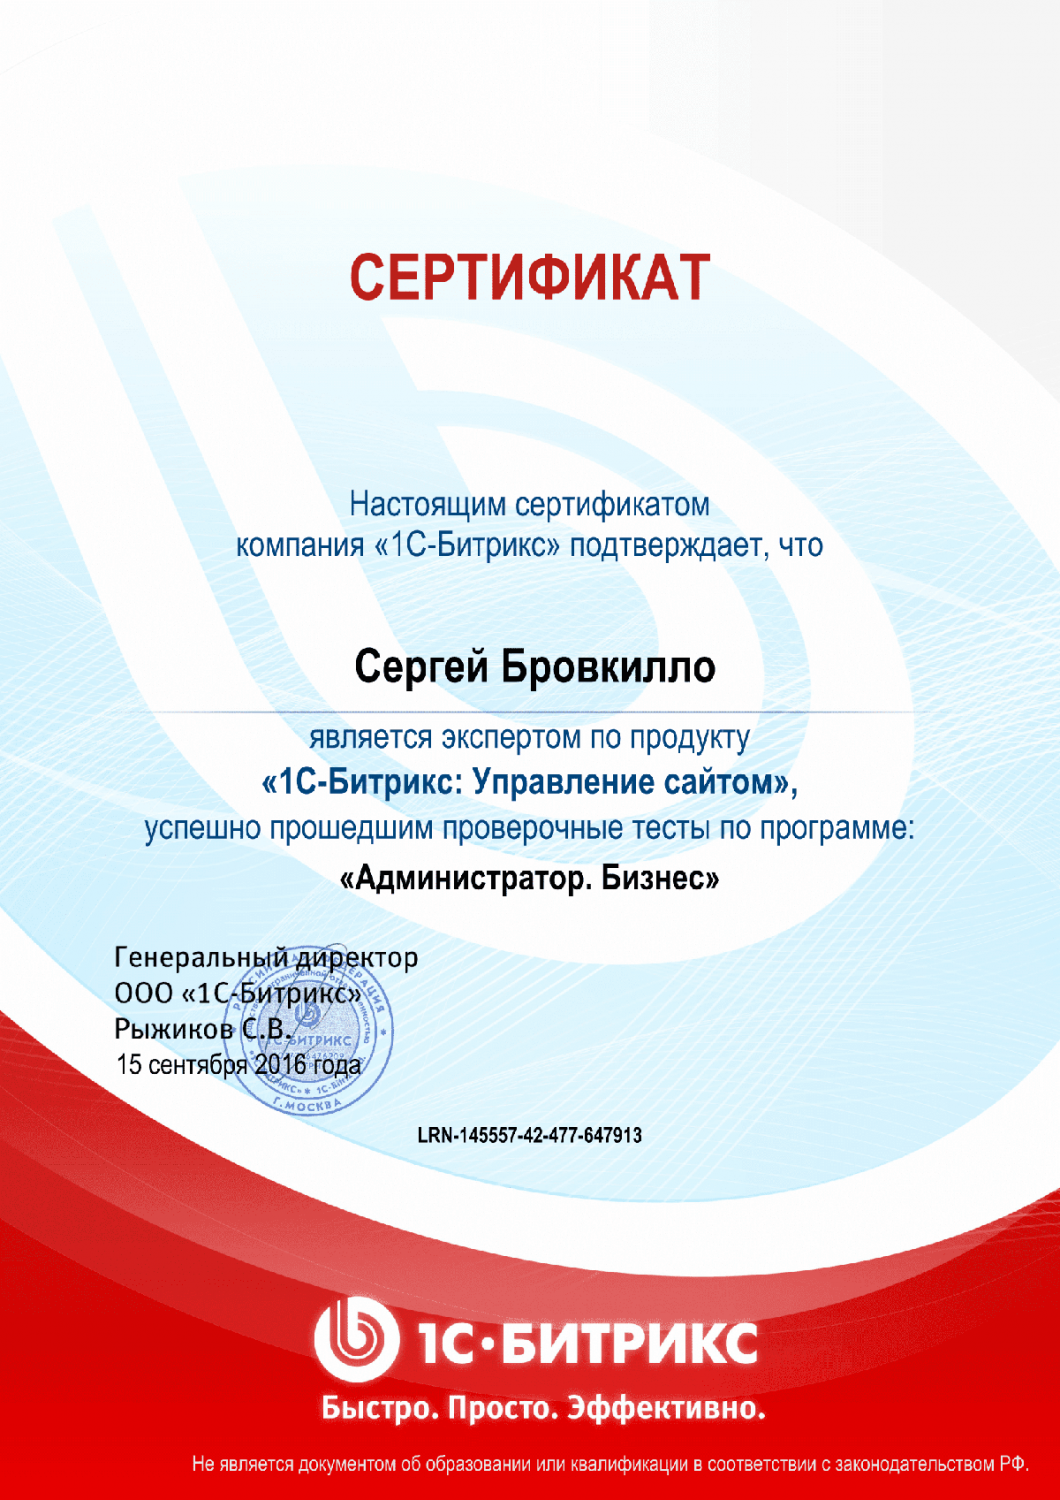 Сертификат эксперта по программе "Администратор. Бизнес" в Владикавказа